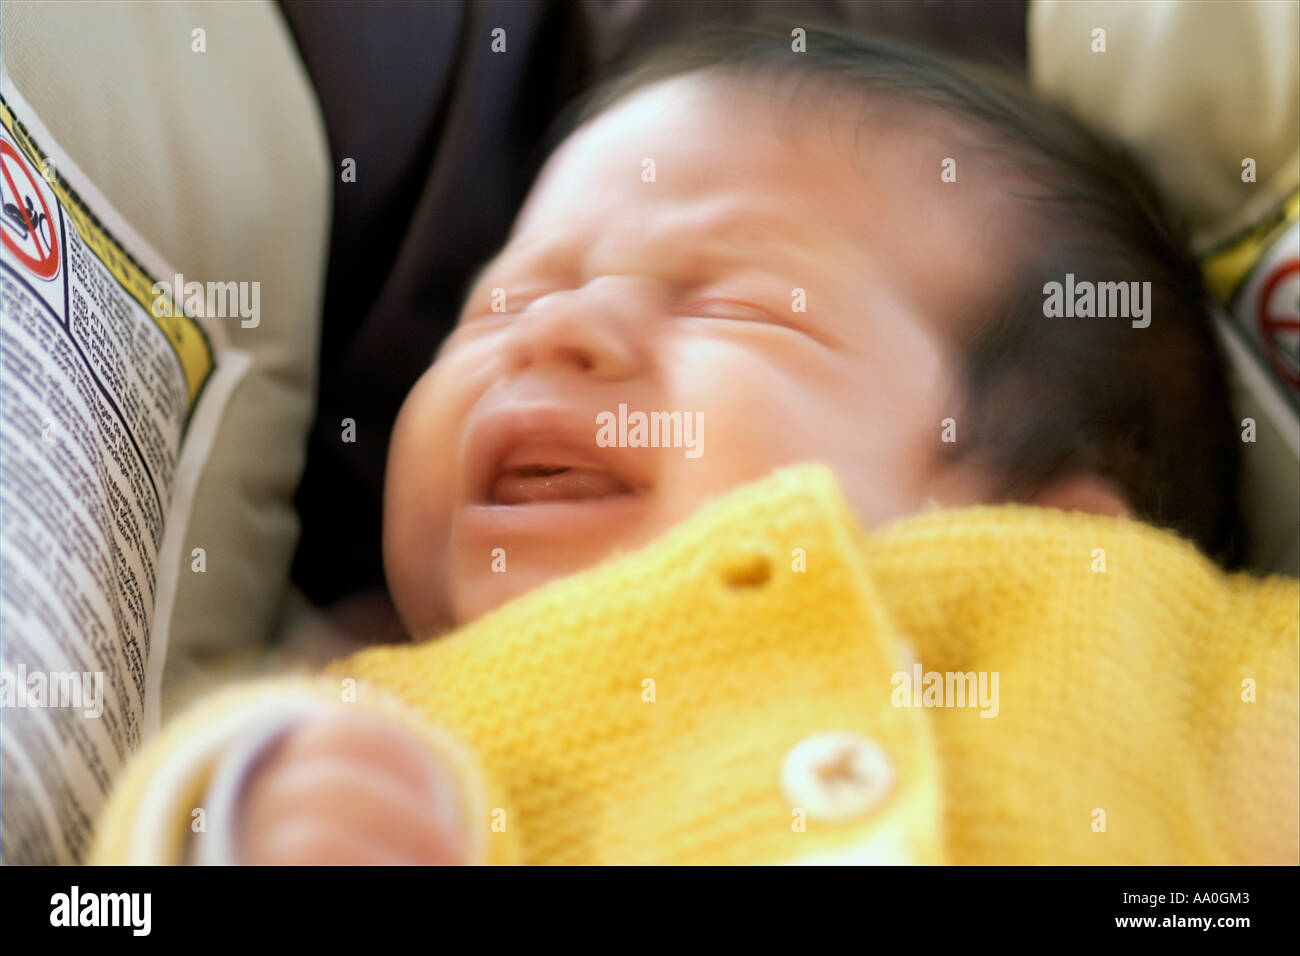 Polonia, neonato (0-3 mesi) piangendo, close-up Foto Stock